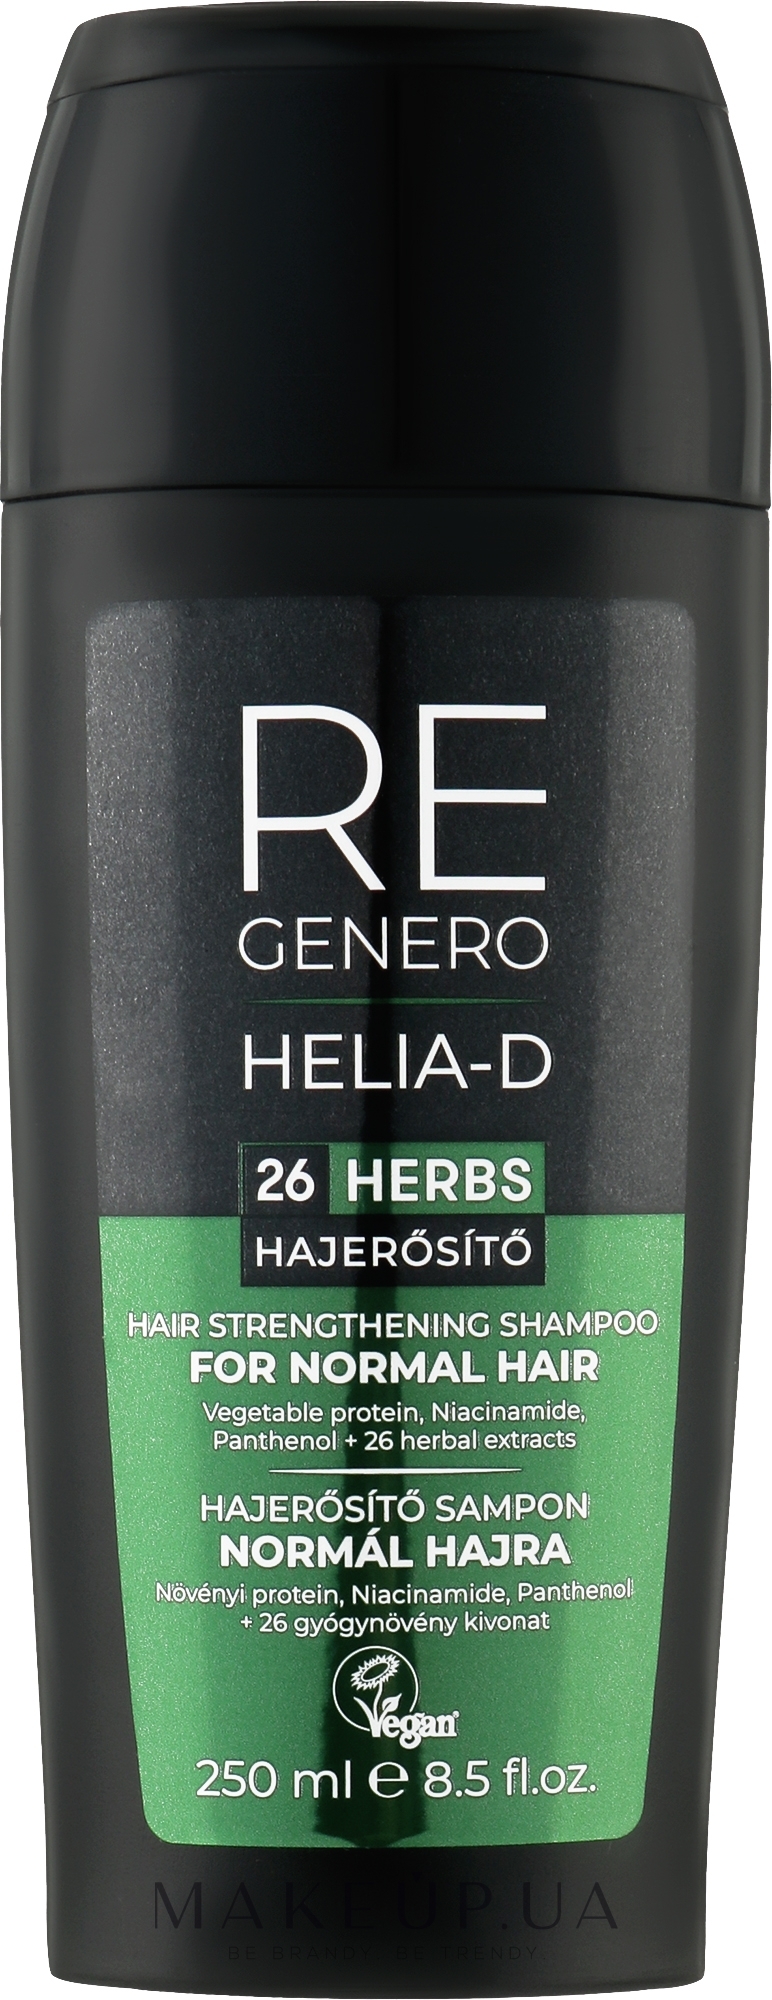 Зміцнювальний шампунь для нормального волосся - Helia-D Regenero Normal Hair Strenghtening Shampoo — фото 250ml